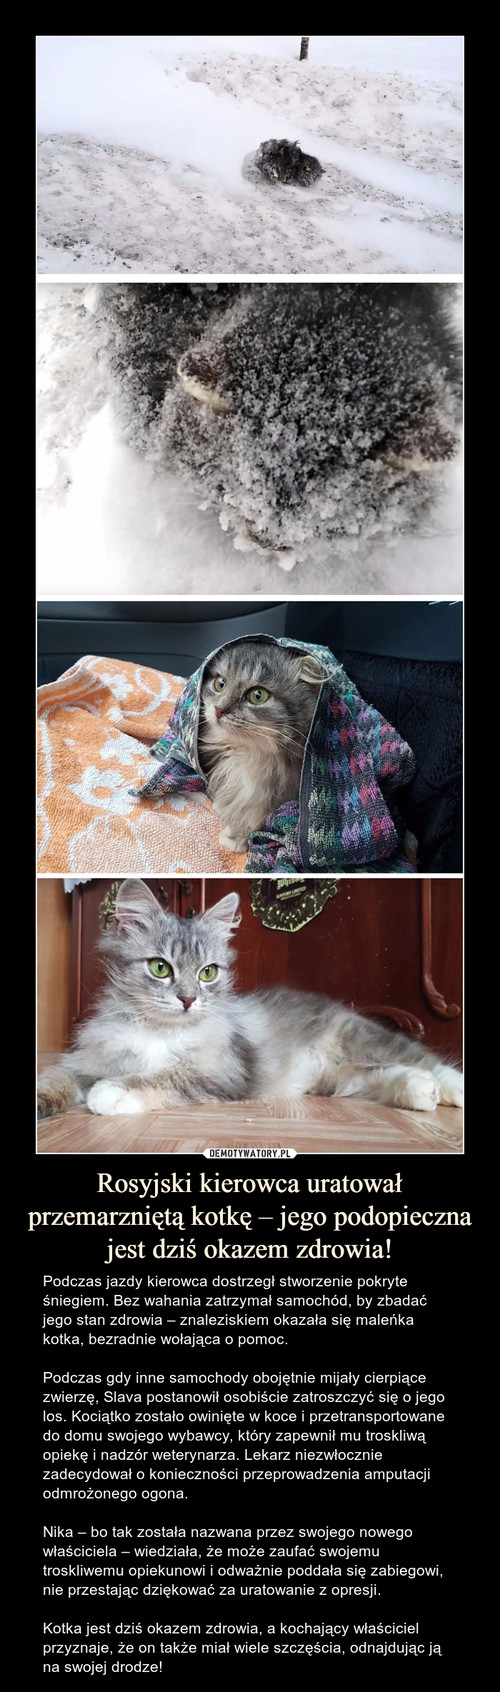 Rosyjski kierowca uratował przemarzniętą kotkę – jego podopieczna jest dziś okazem zdrowia!